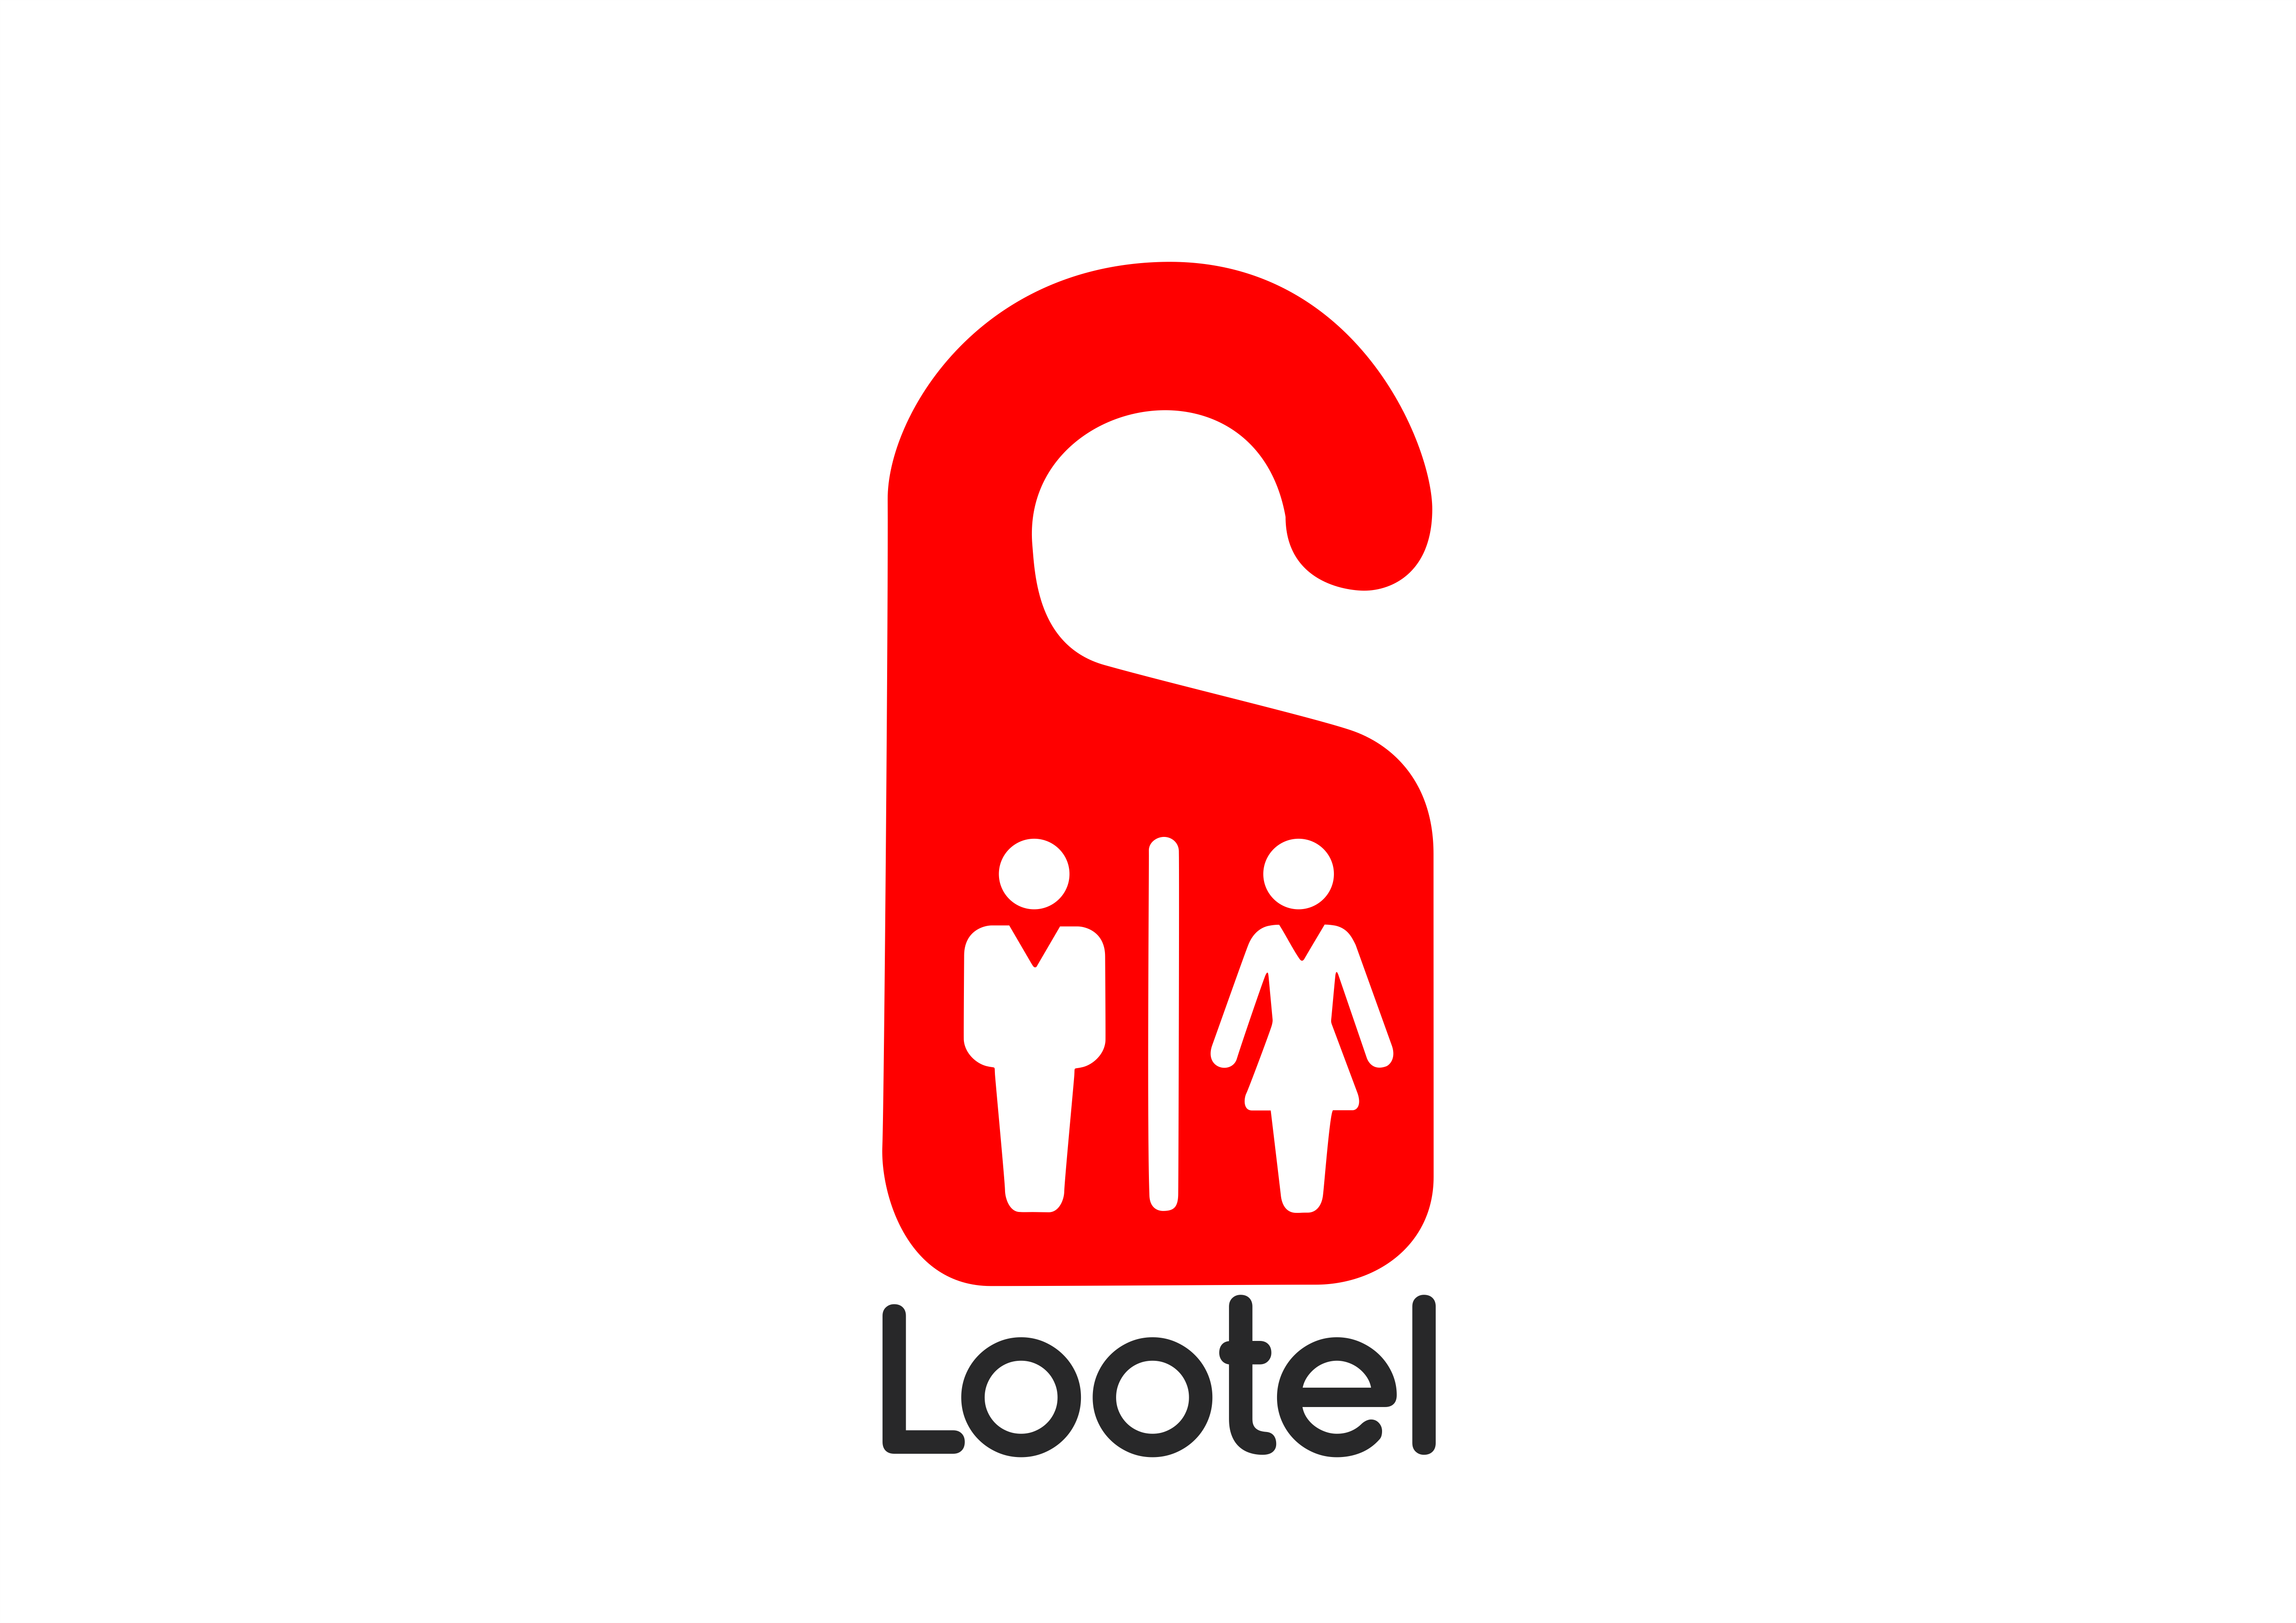 Lootel logo